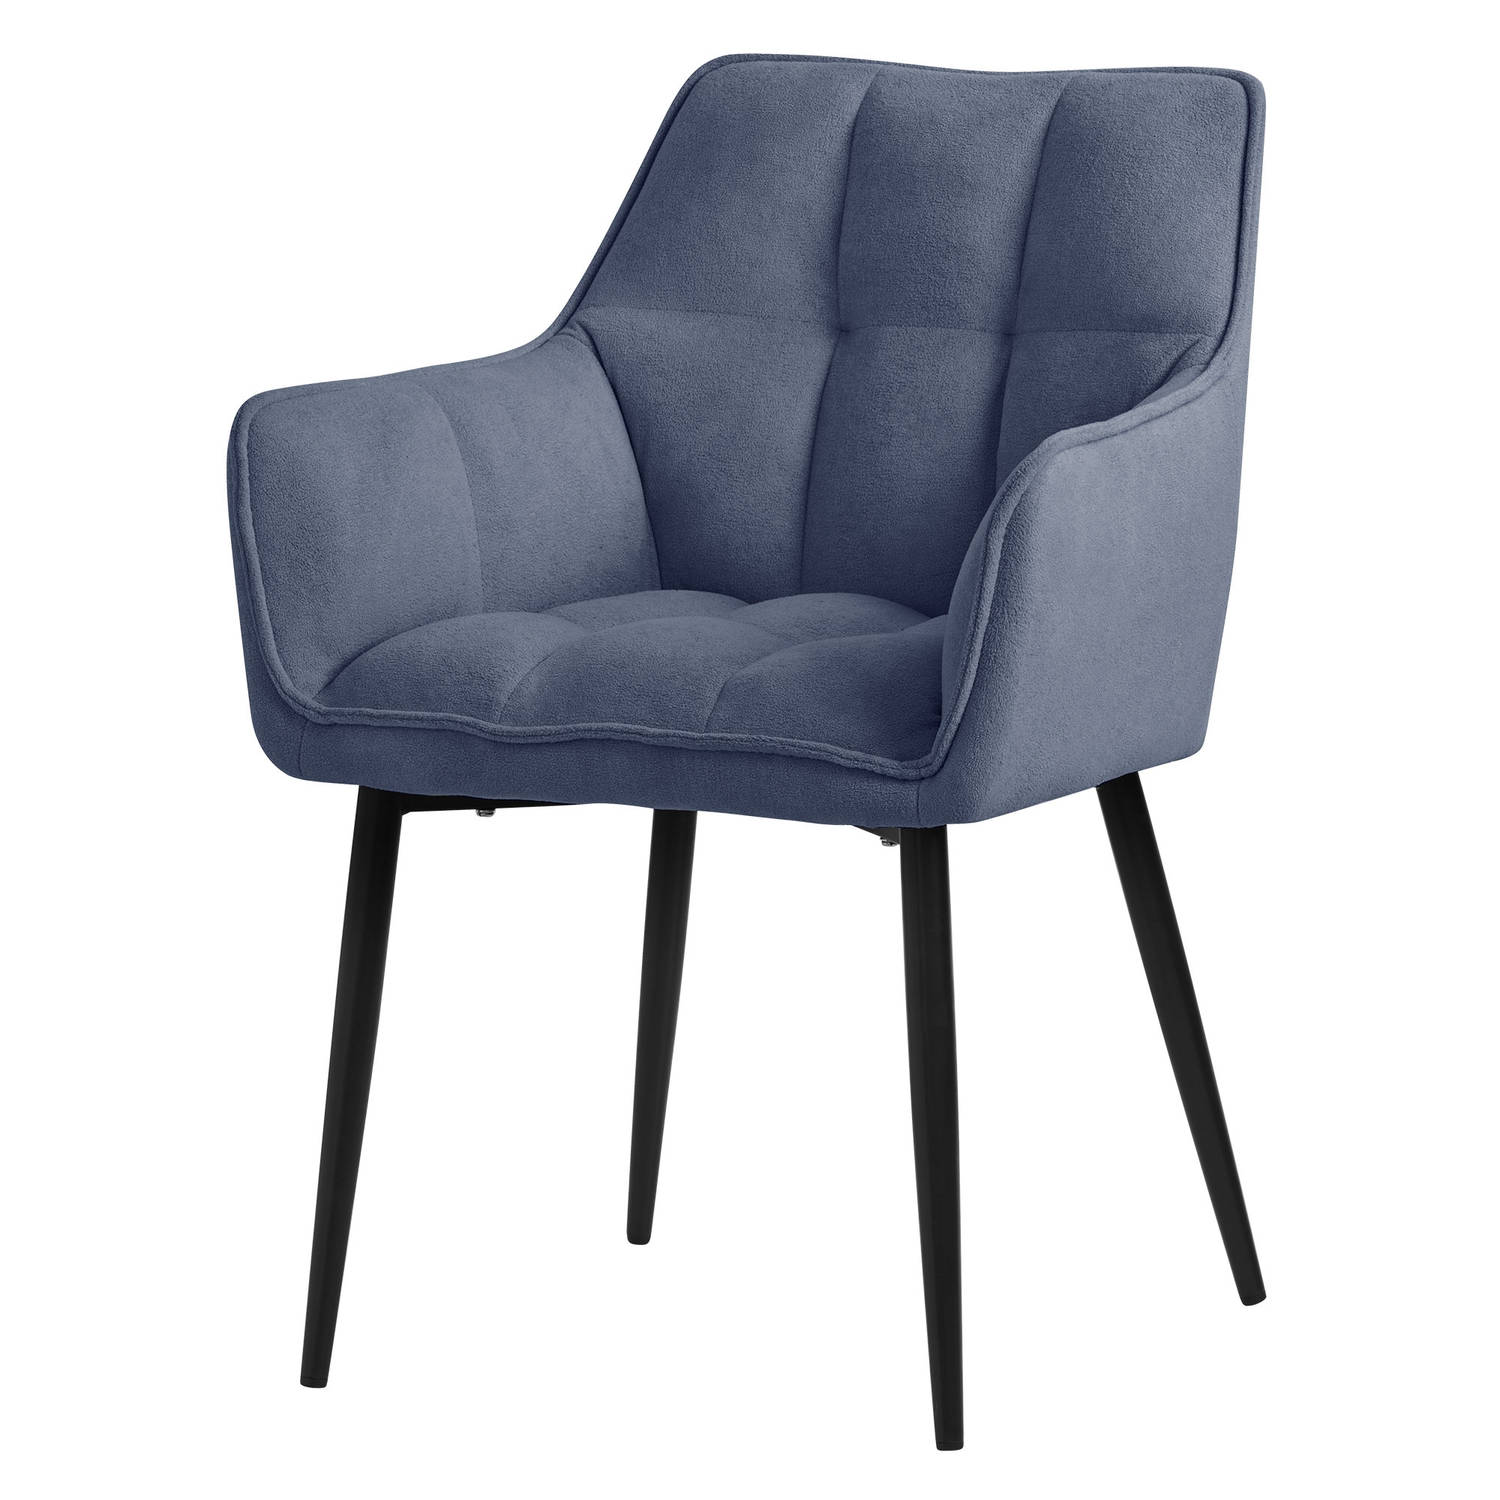 ML-Design eetkamerstoelen in badstof, blauw, keukenstoel met dikke gestoffeerde zitting en metalen poten, woonkamerstoel met rugleuning en armleuningen, gestoffeerde stoel, ergonom